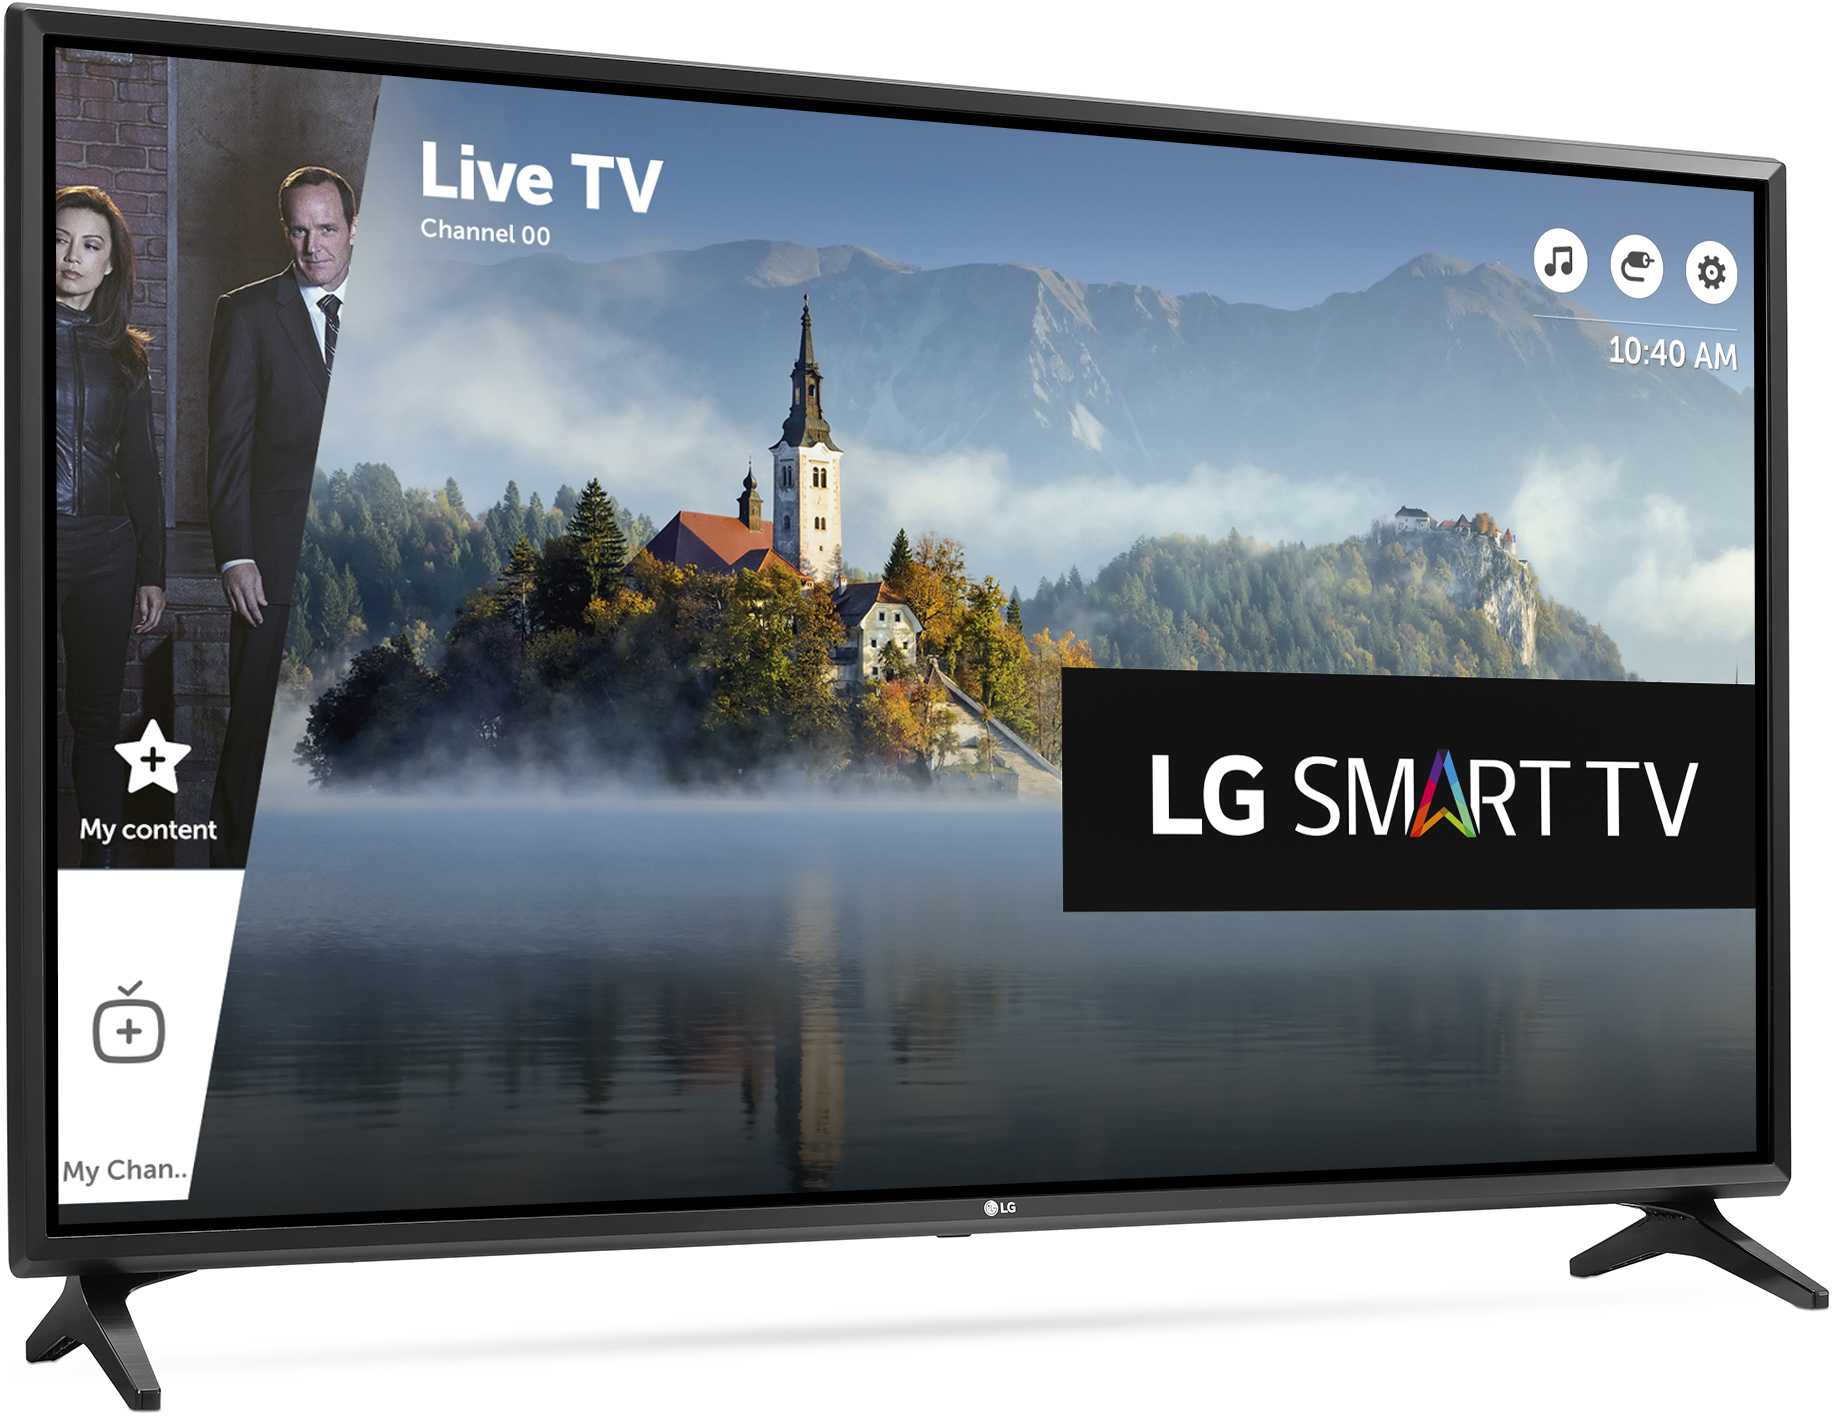 Lg 32lj610v (черный) - купить , скидки, цена, отзывы, обзор, характеристики - телевизоры